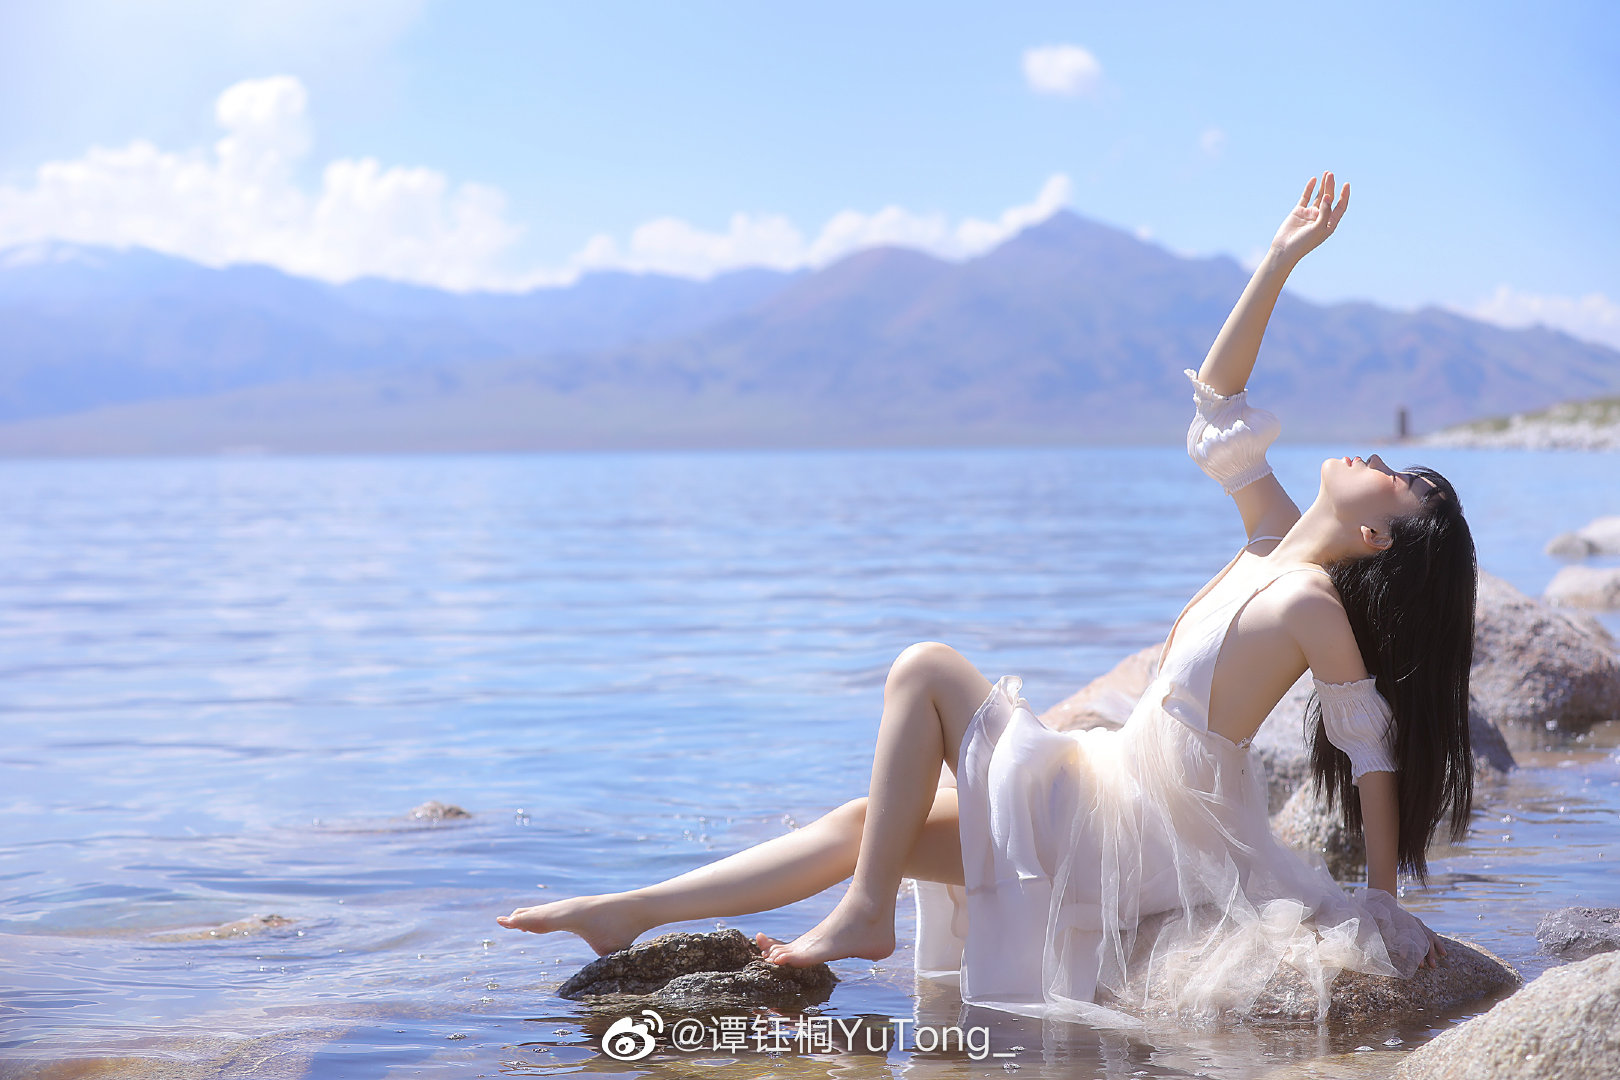 Người mẫu mặc chiếc váy màu trắng nhẹ nhàng chụp hình bên biển (Nguồn: Weibo YuTong_)